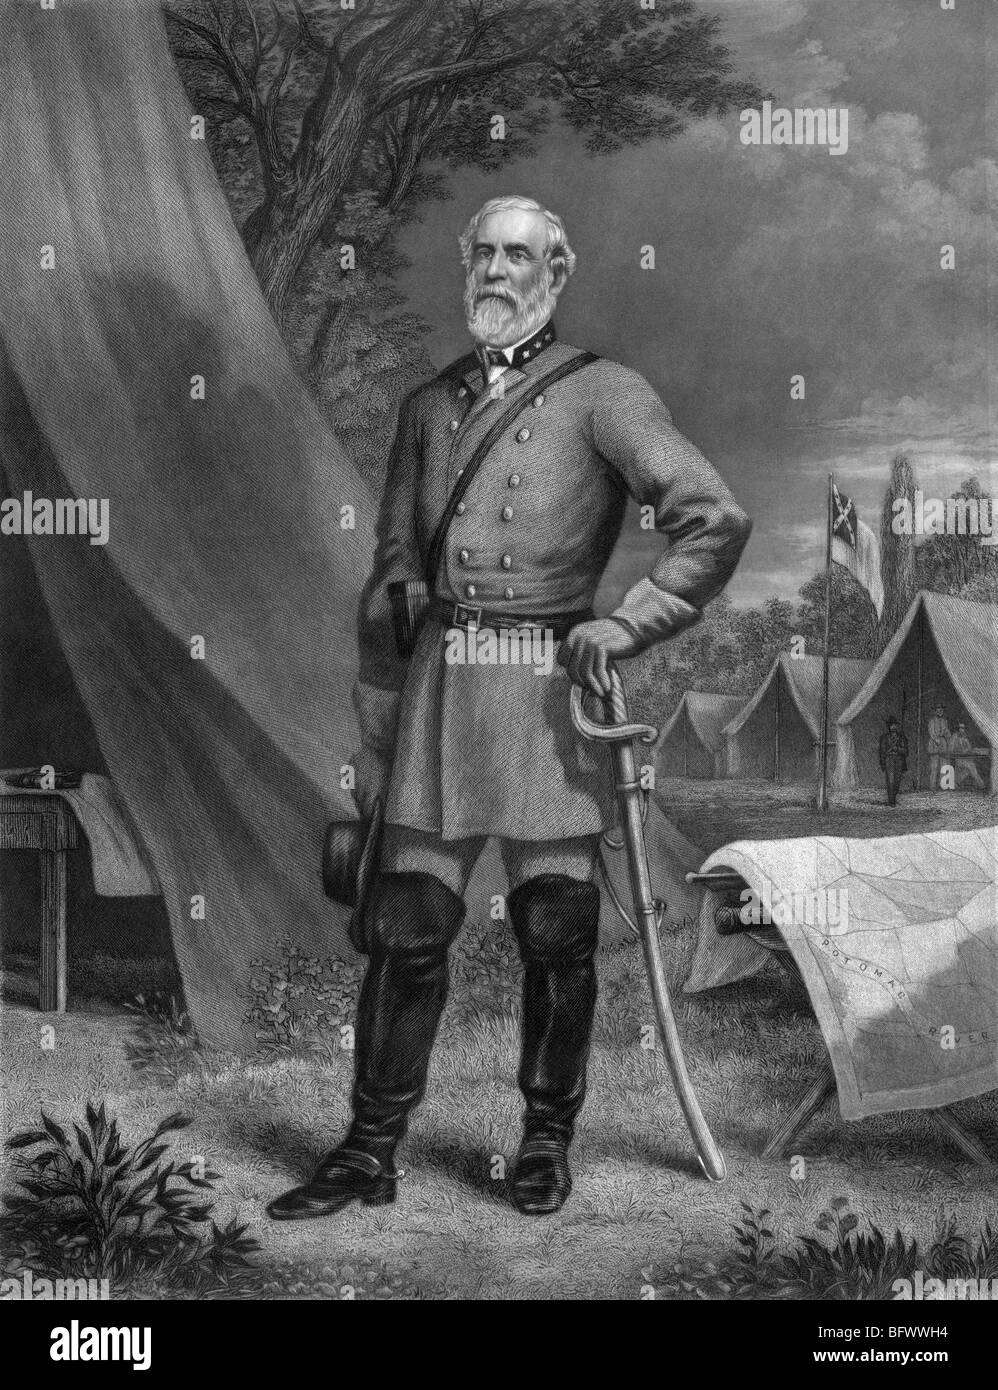 Retrato del General Robert E Lee (1807 - 1870) - El comandante del Ejército Confederado de Virginia del Norte en la Guerra Civil Americana. Foto de stock